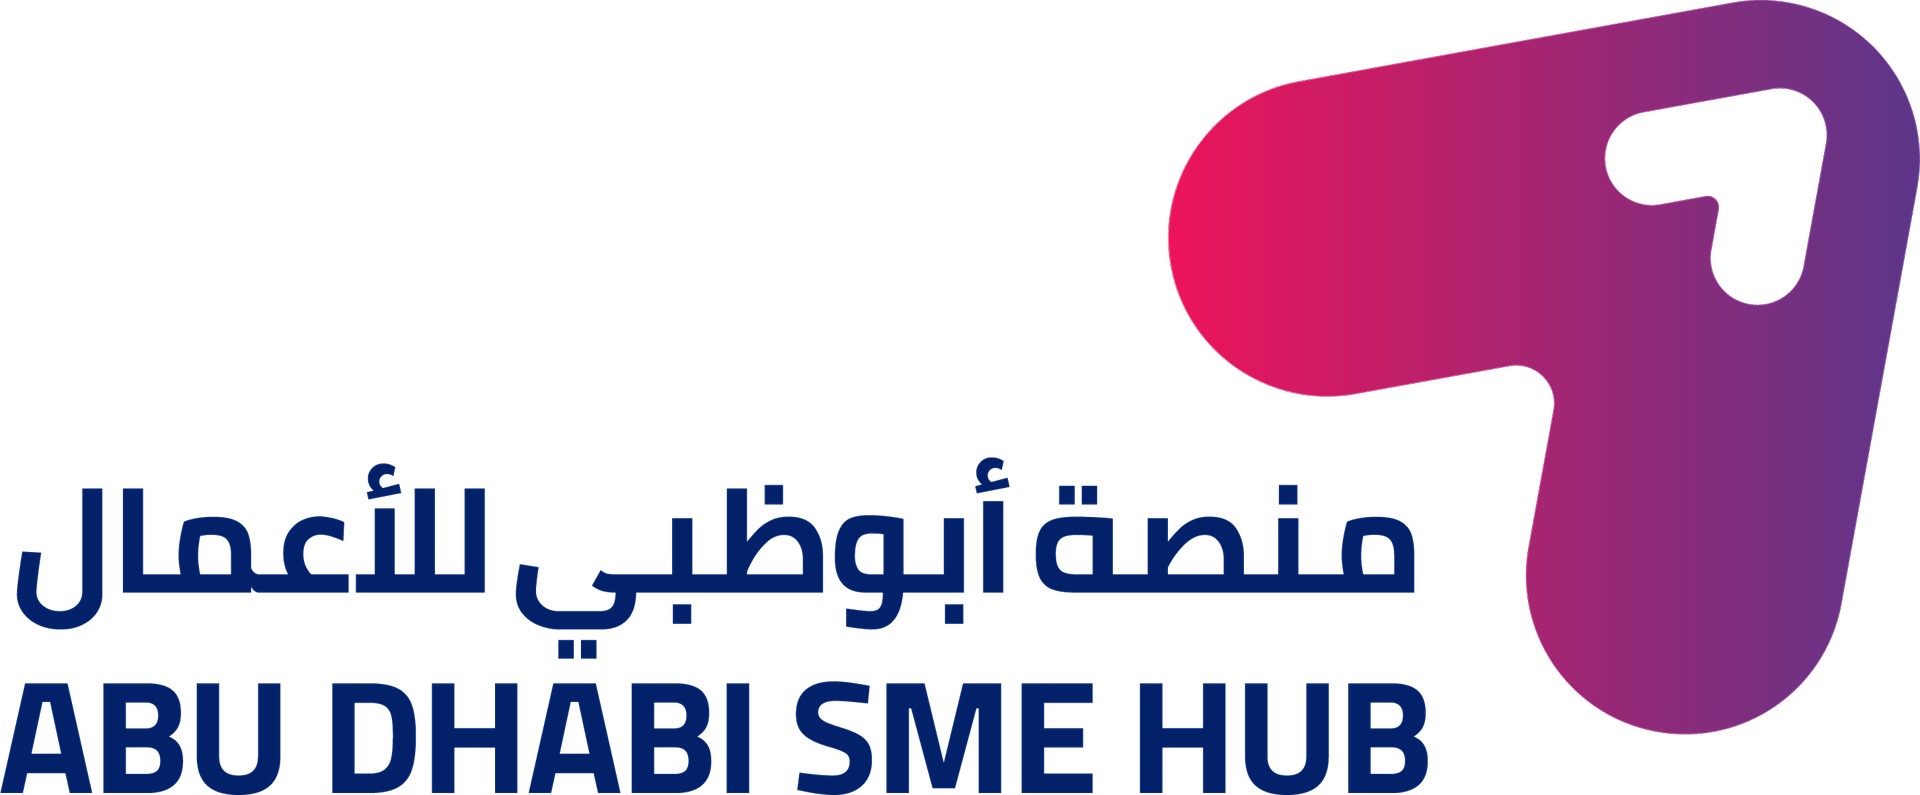 Abu Dhabi SME Hub